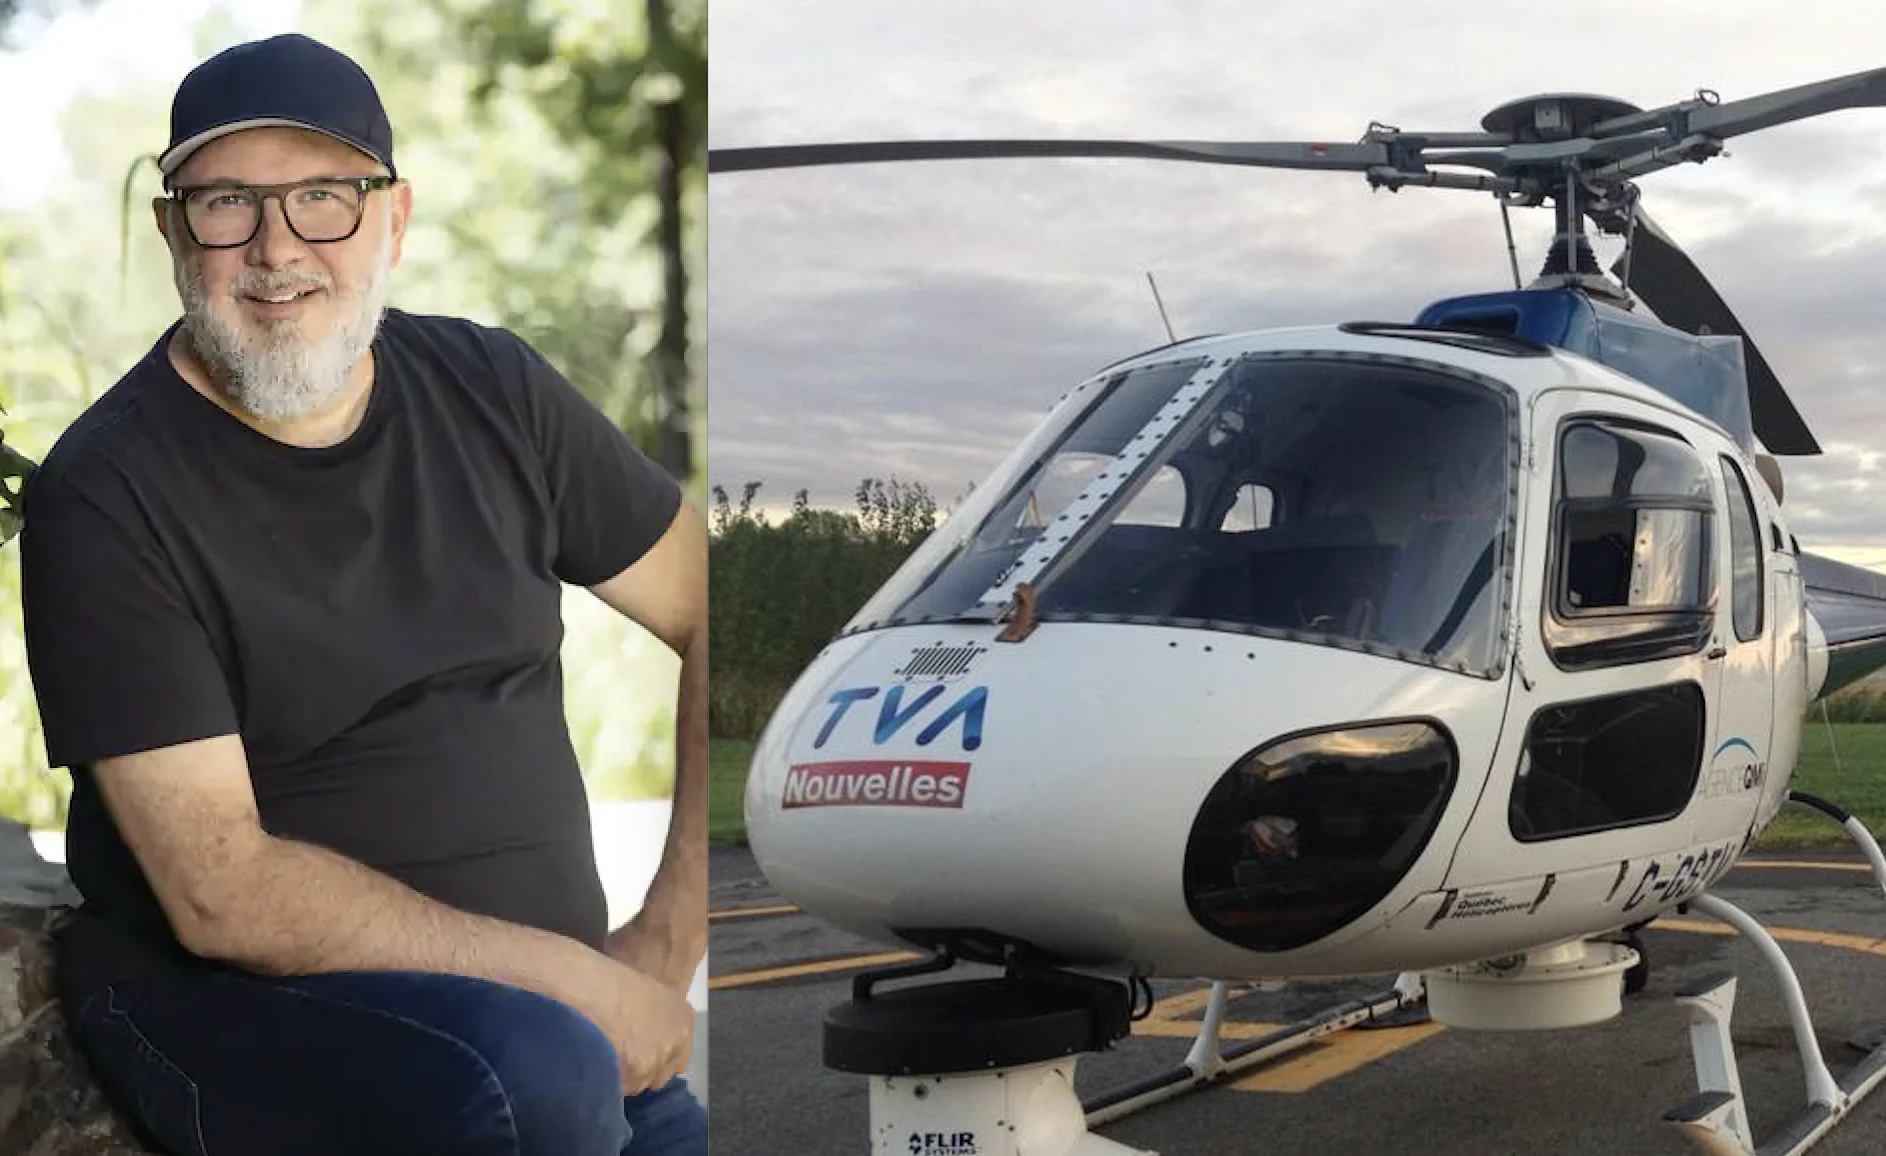 Le salaire de Jean-Charles Lajoie a CLOUÉ au sol l'hélicoptère TVA